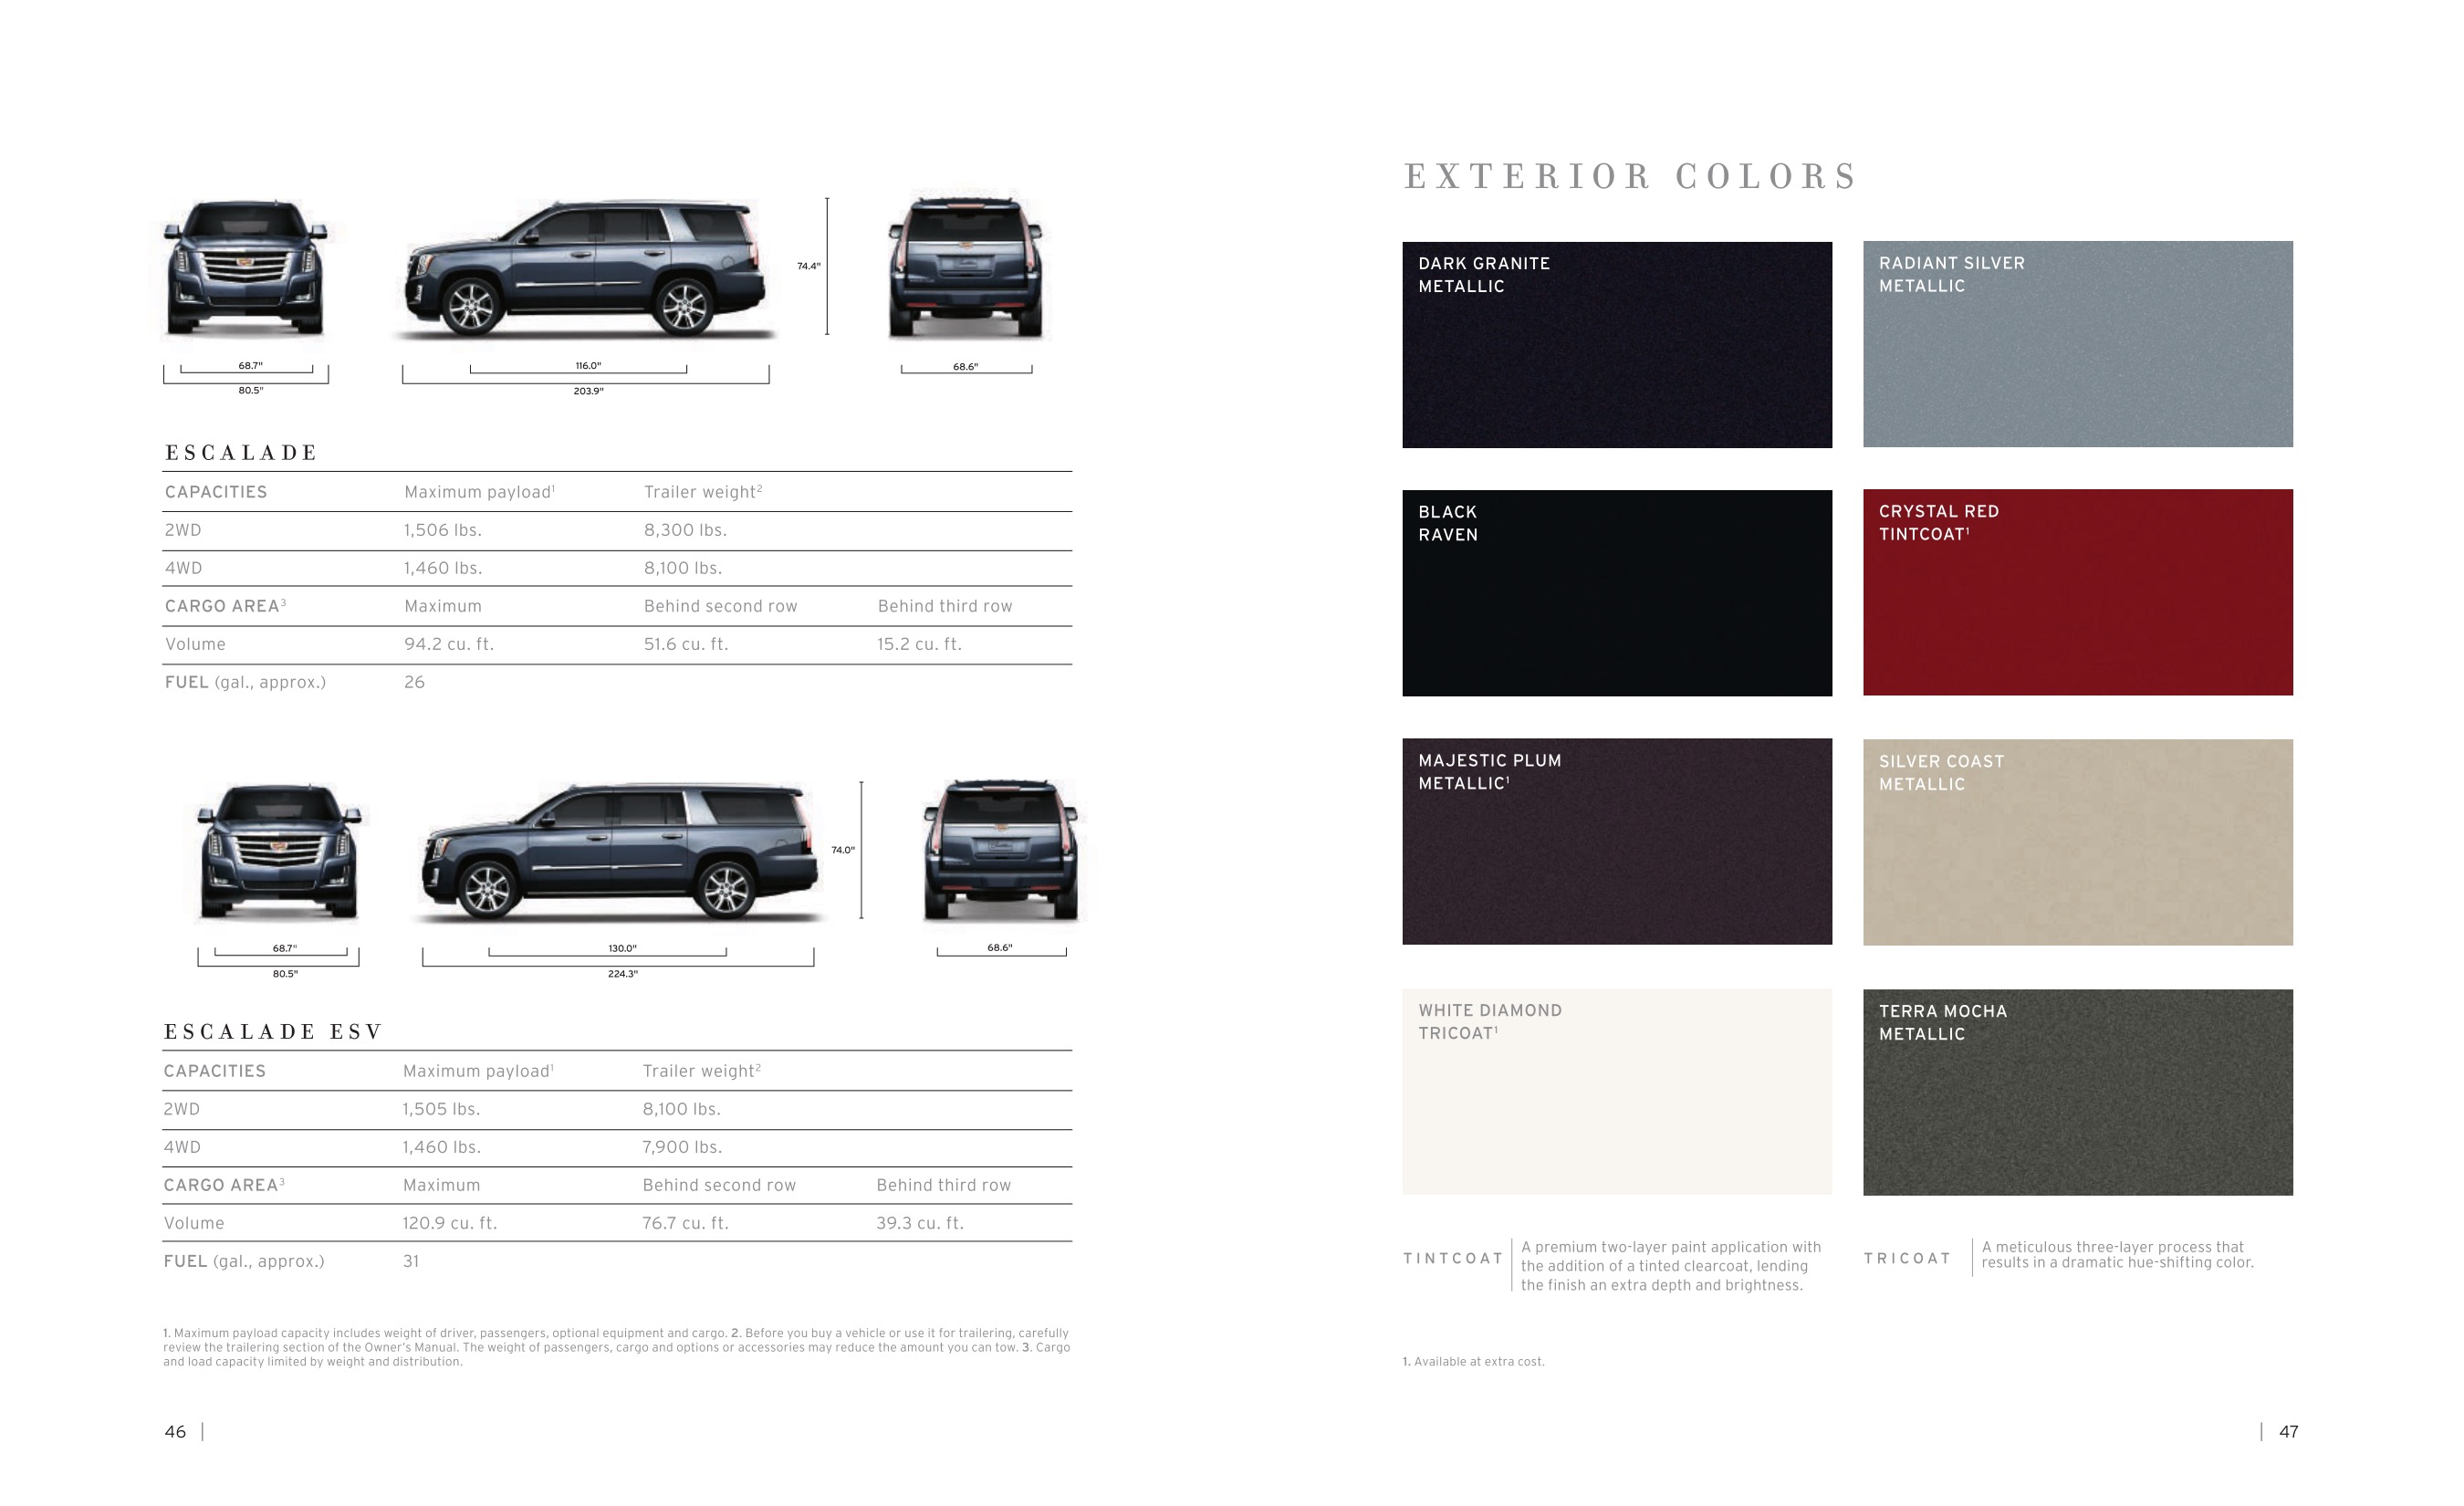 2015 Cadillac Escalade Brochure Page 8